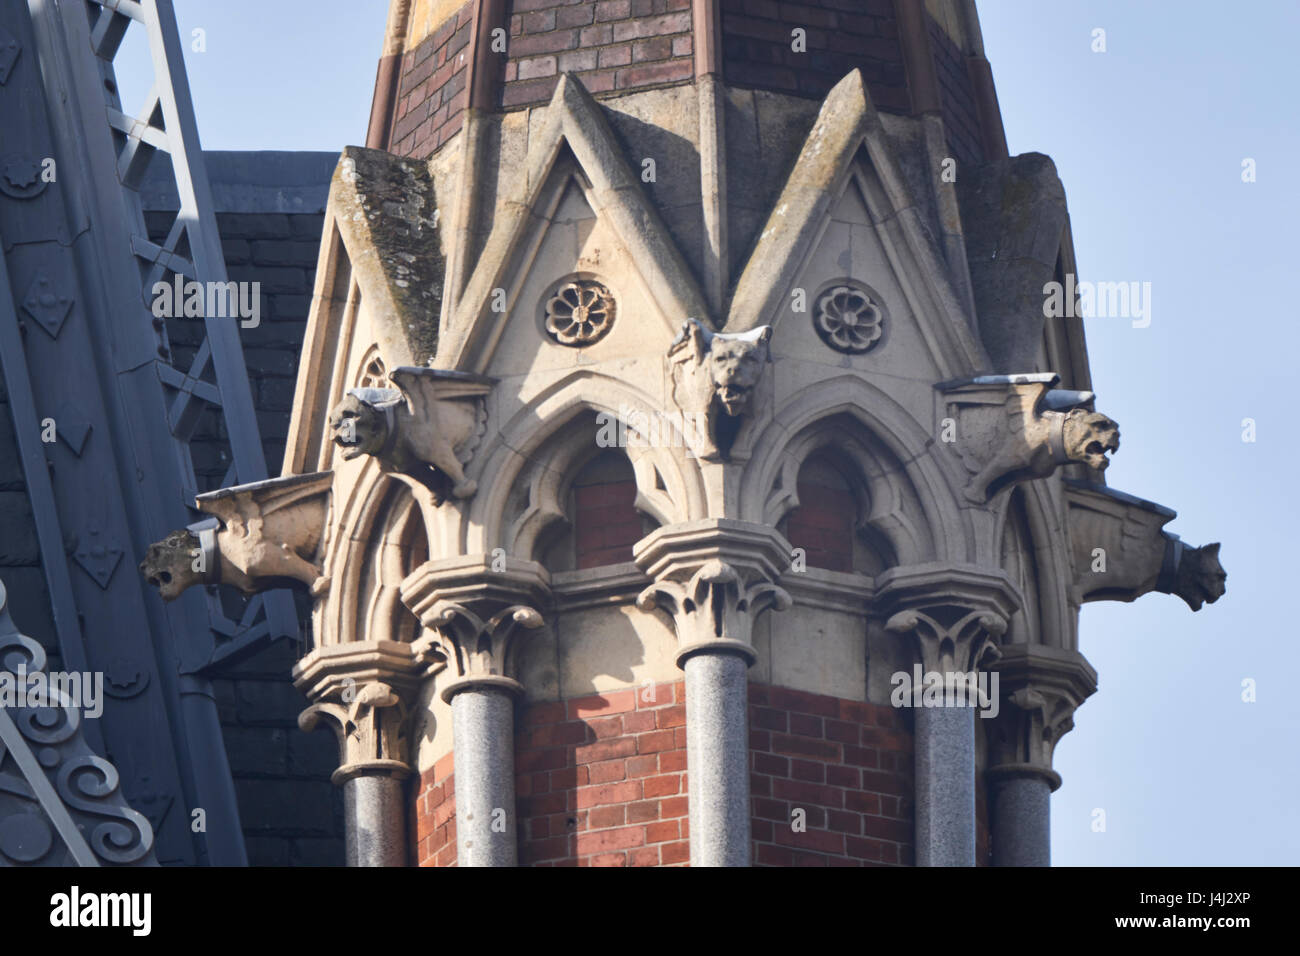 Dettaglio di pinnacle sulla torre dell'orologio, Midland Grand Hotel alla Stazione di St Pancras, London. Con alberi di marmo, pietra mascheroni, capitelli e tettoie. Foto Stock